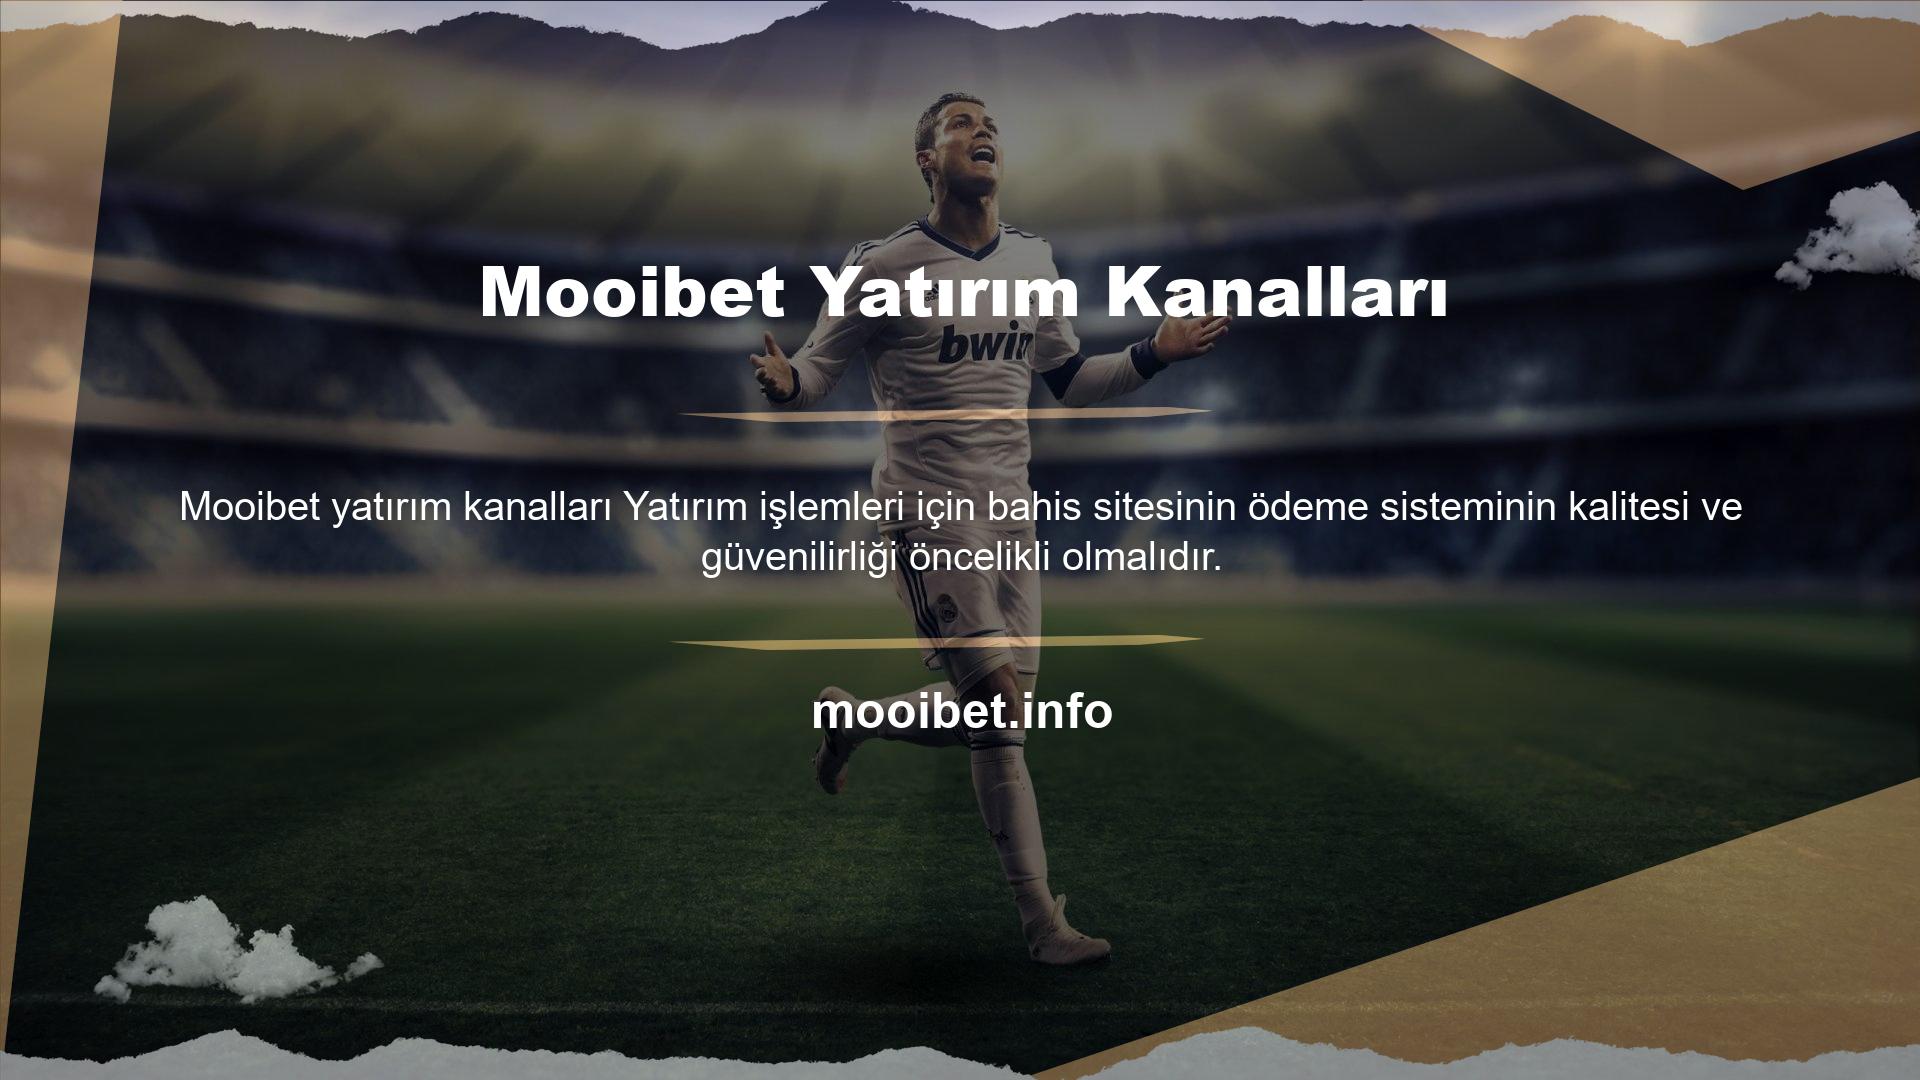 Mooibet, gelişmiş bir çevrimiçi yatırım kanalı bahis platformudur